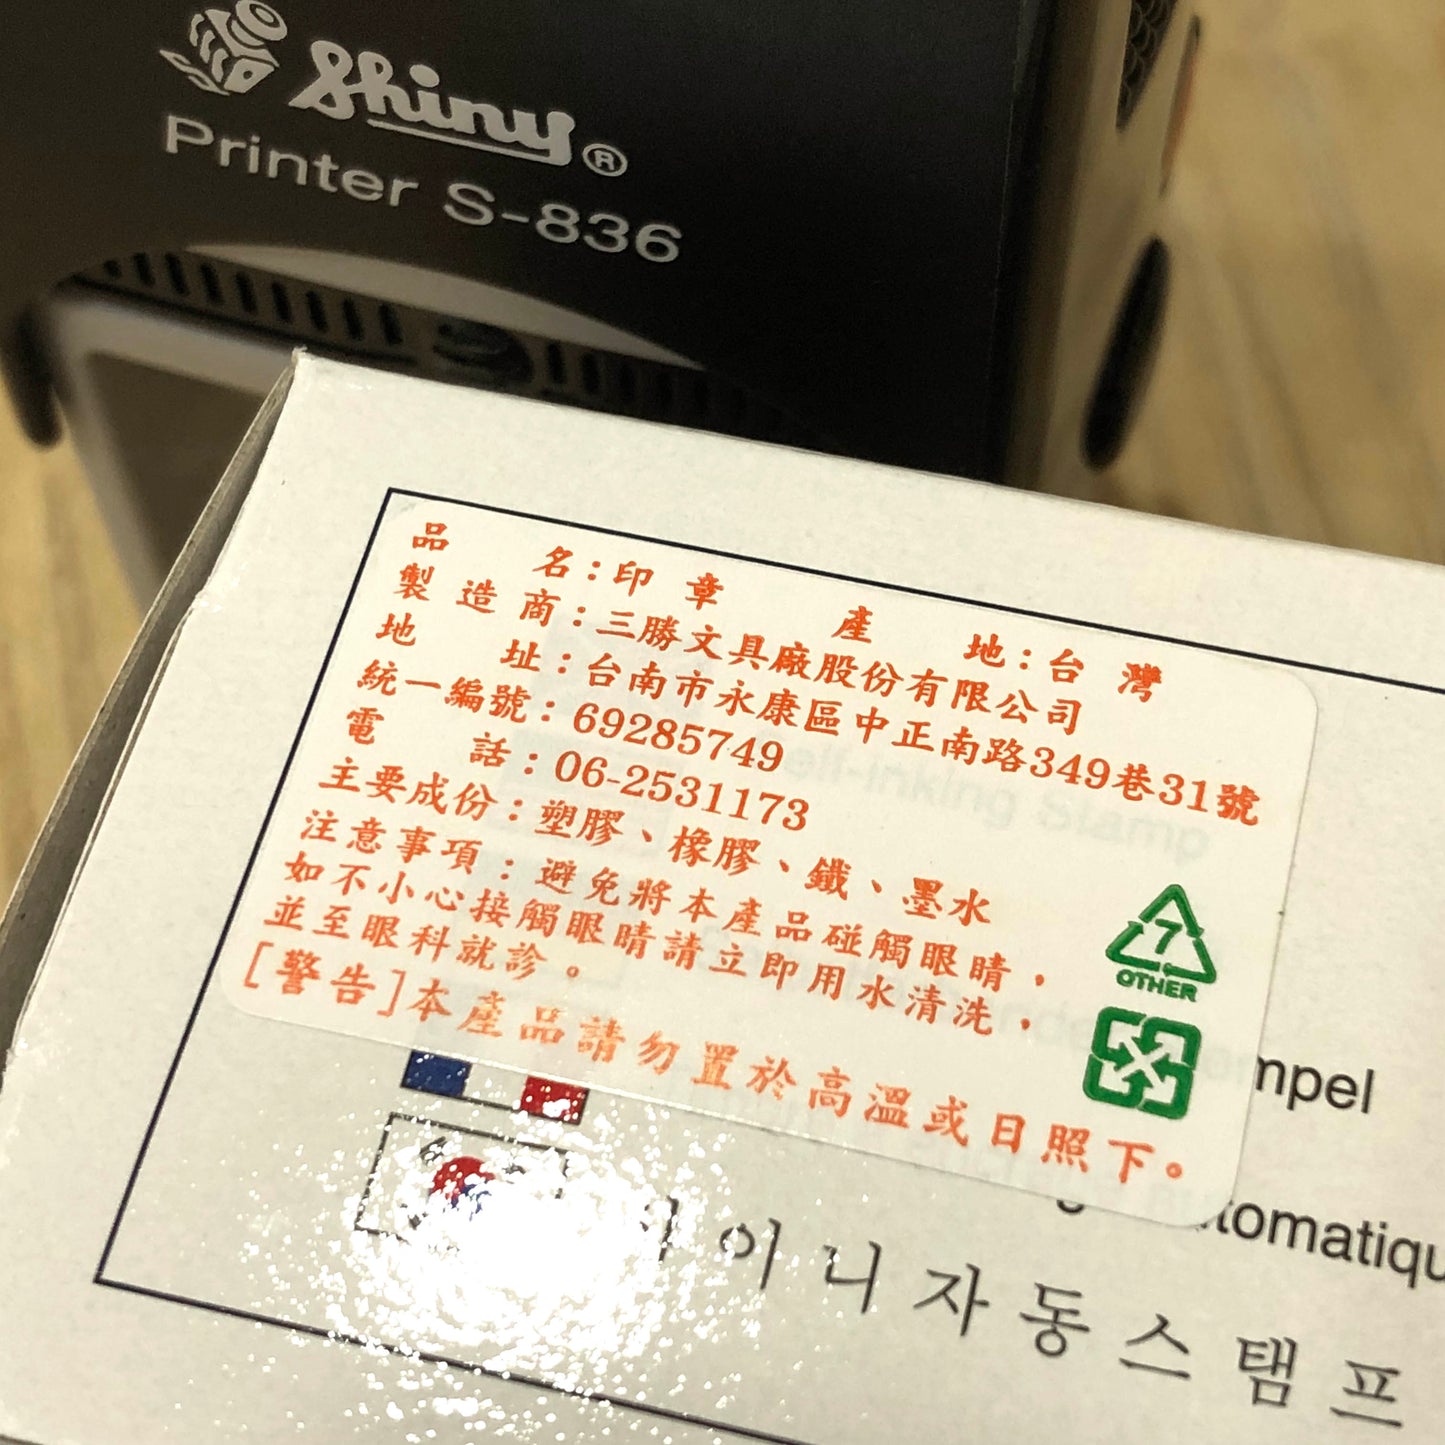 香港人加油 回墨印 🇹🇼 Made in Taiwan ✨New Arrival✨